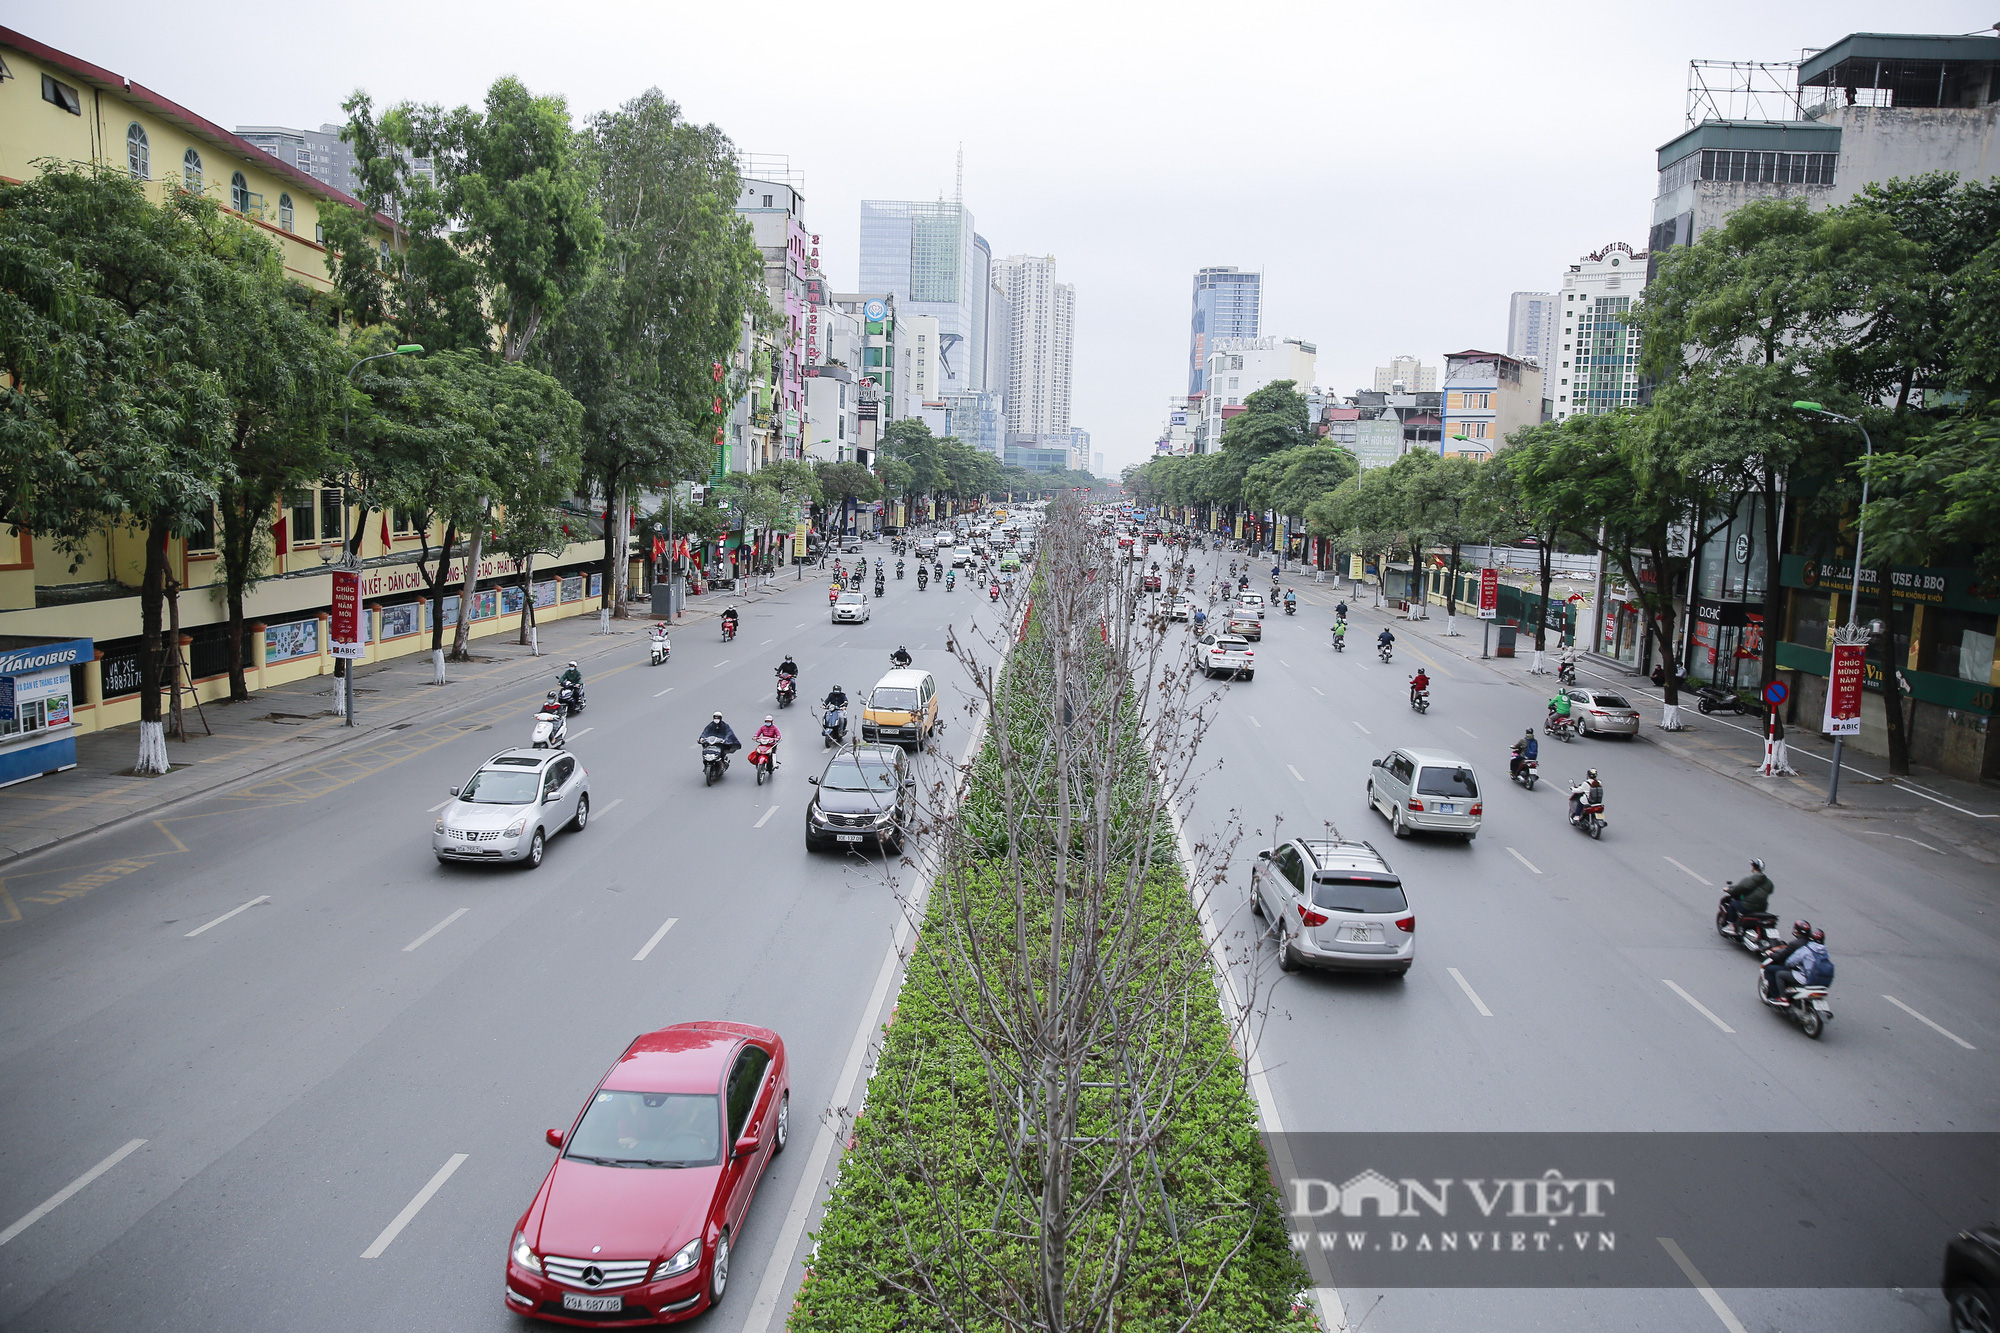 Bất ngờ giao thông Hà Nội trong ngày đầu tiên đi làm sau kỳ nghỉ Tết Nguyên đán - Ảnh 6.